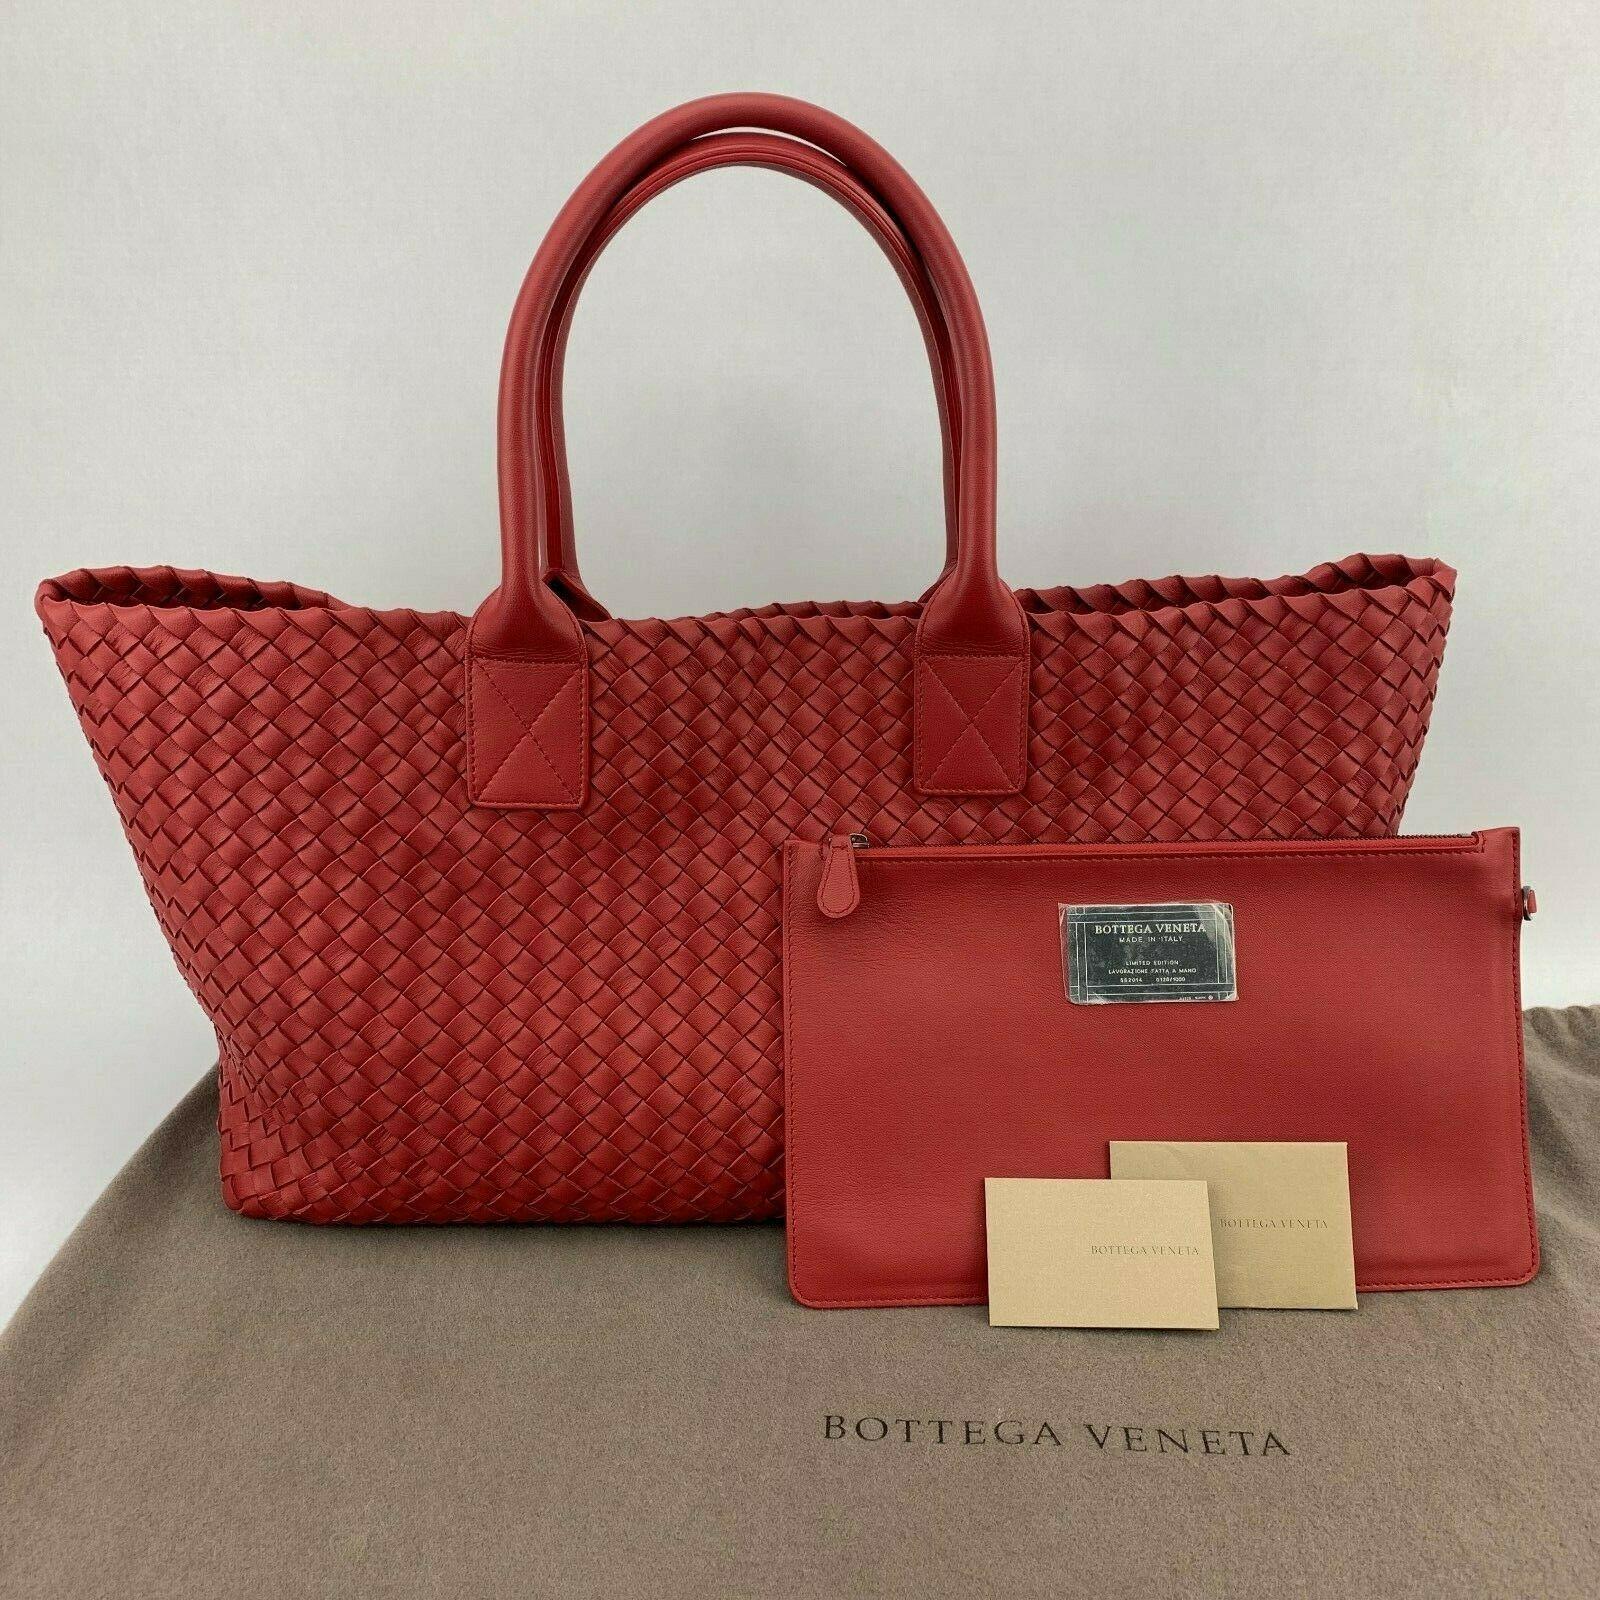 Bottega Veneta Cabat Intrecciato Nappa Tote Bag Poppy Red - Retail ...